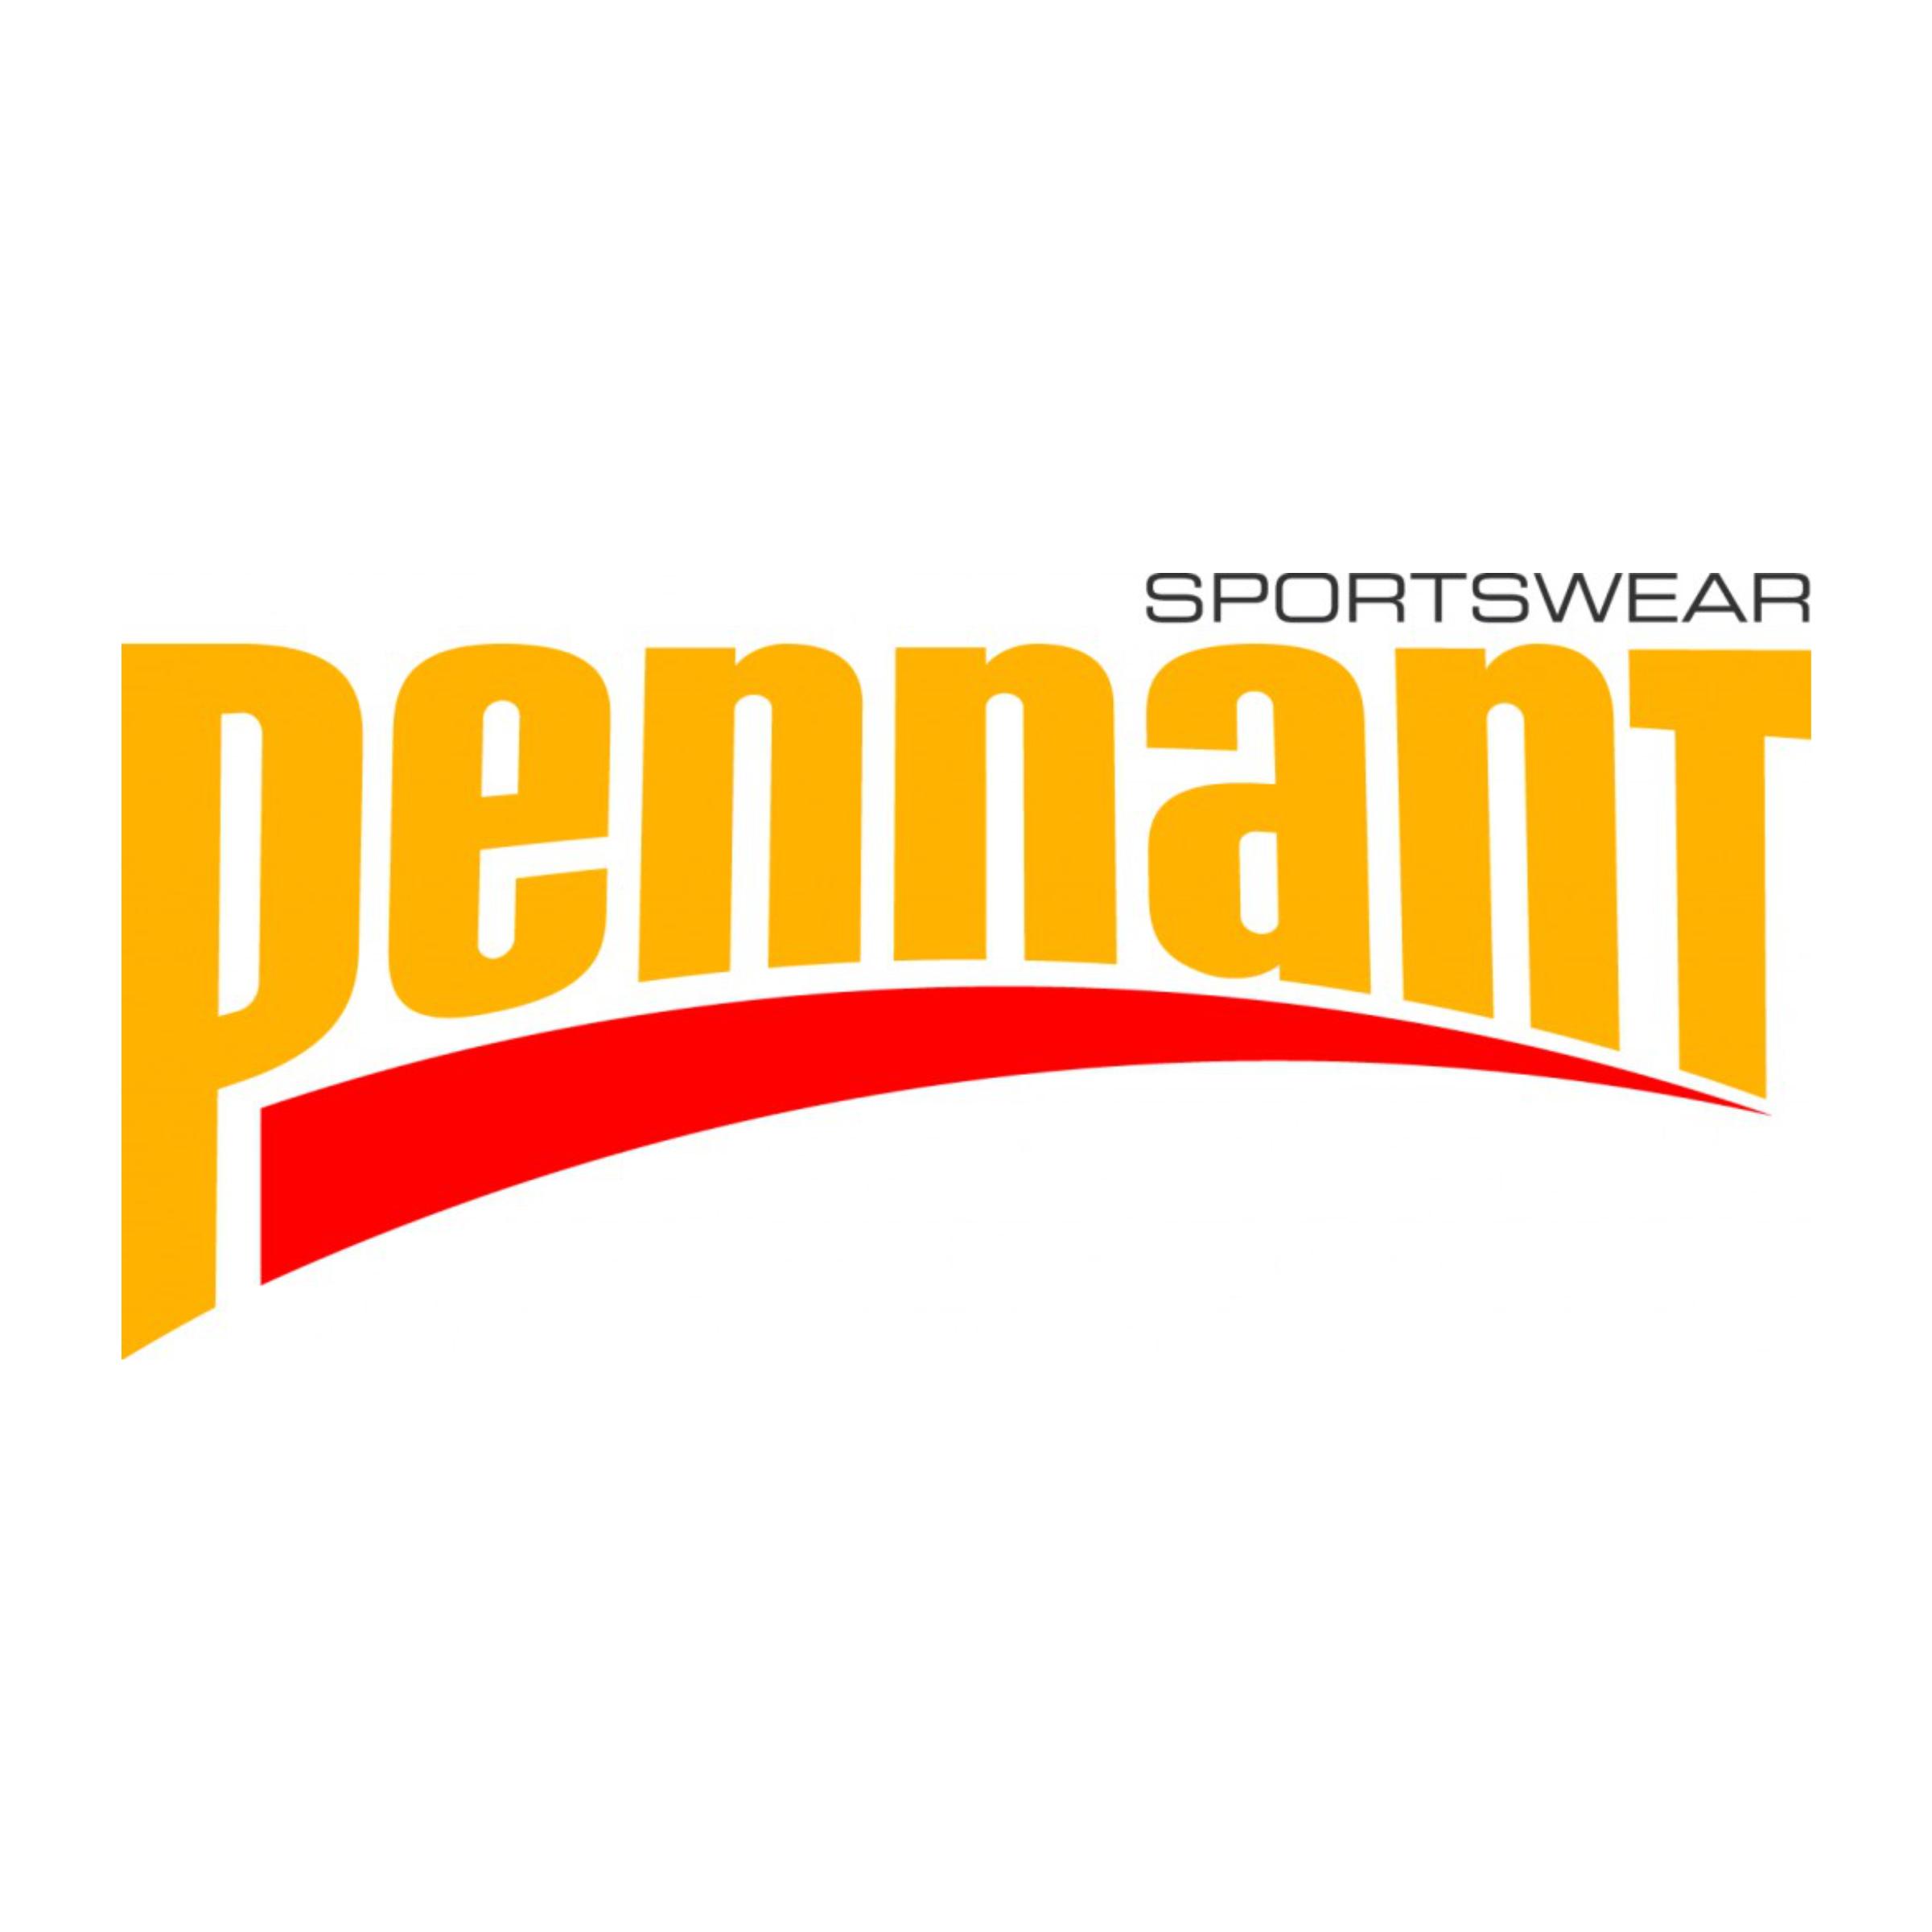 Pennant Sportswear Logo.png